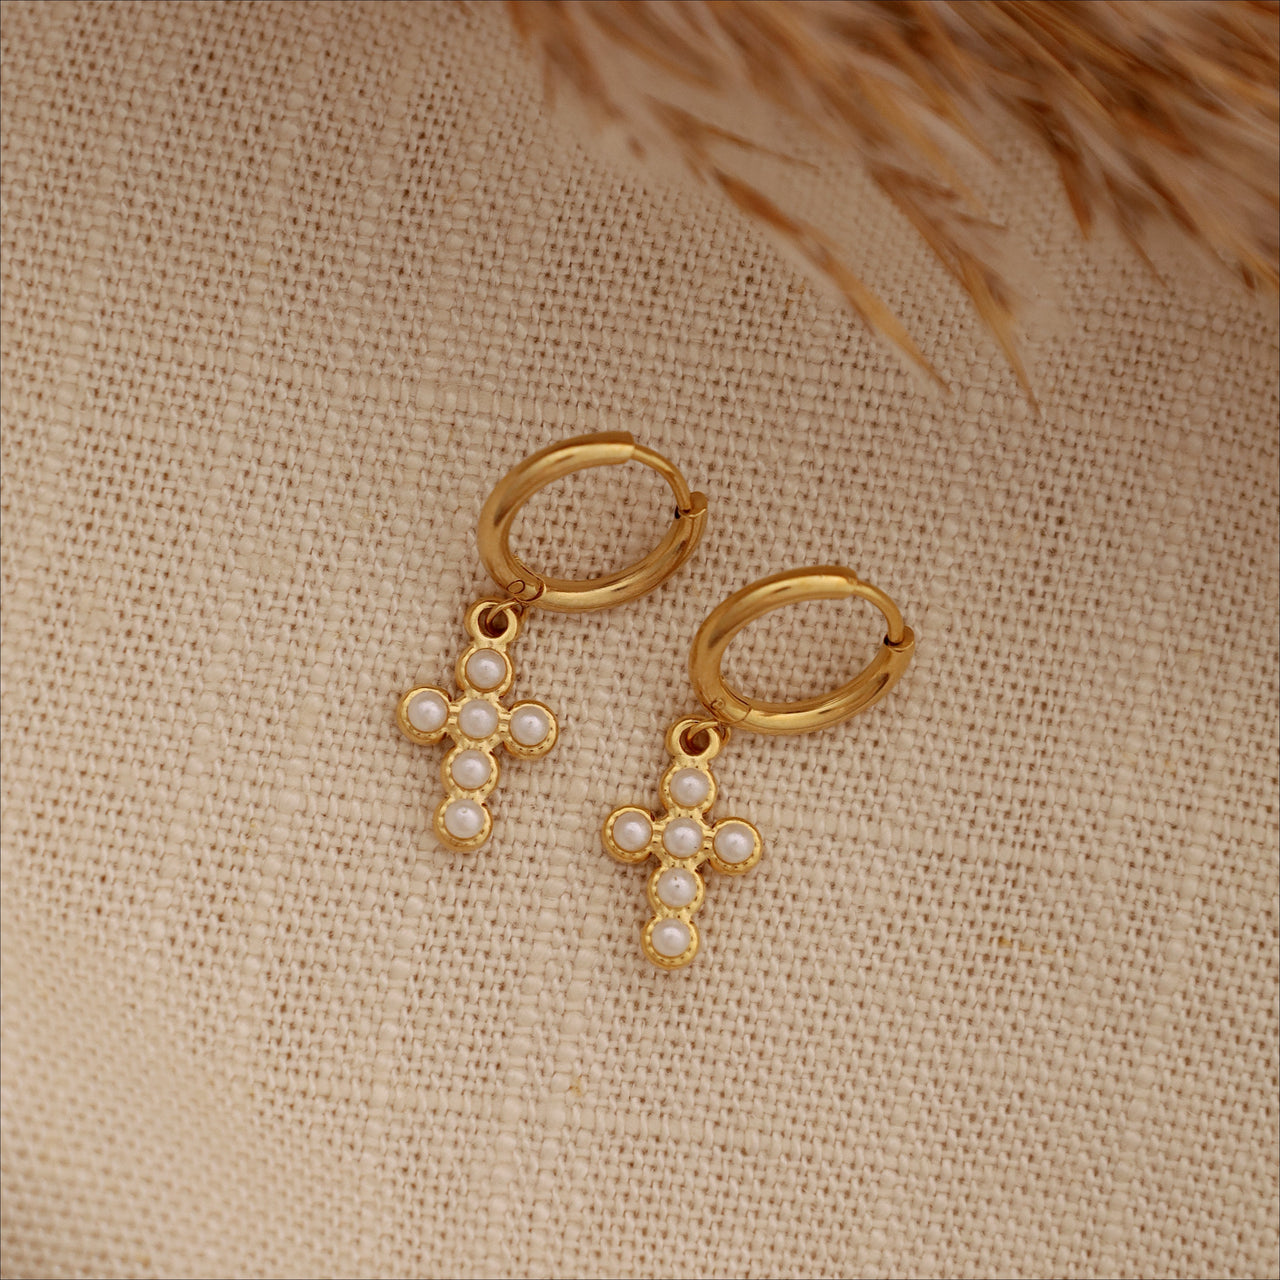 Cross pearls earrings